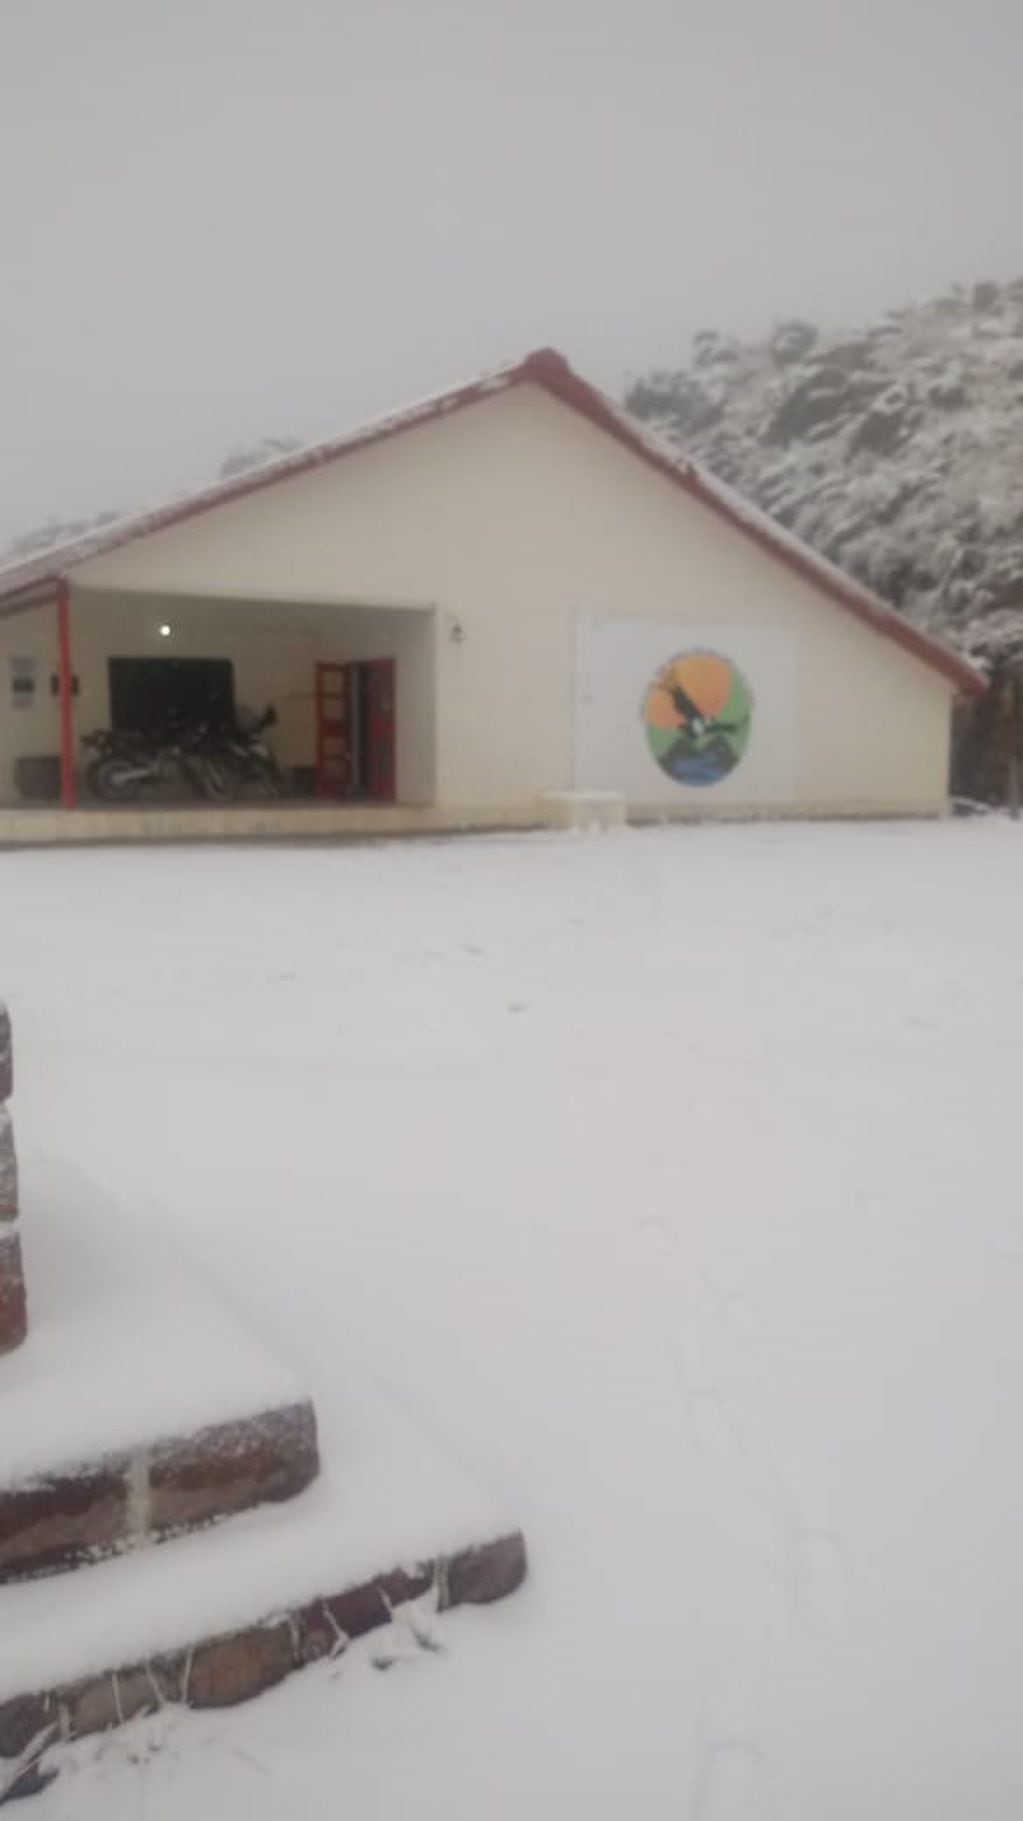 La escuela Ceferino Namuncurá en las Altas Cumbres de Córdoba tras la nevada de este miércoles 22 de mayo. (Noelia Britos, docente)